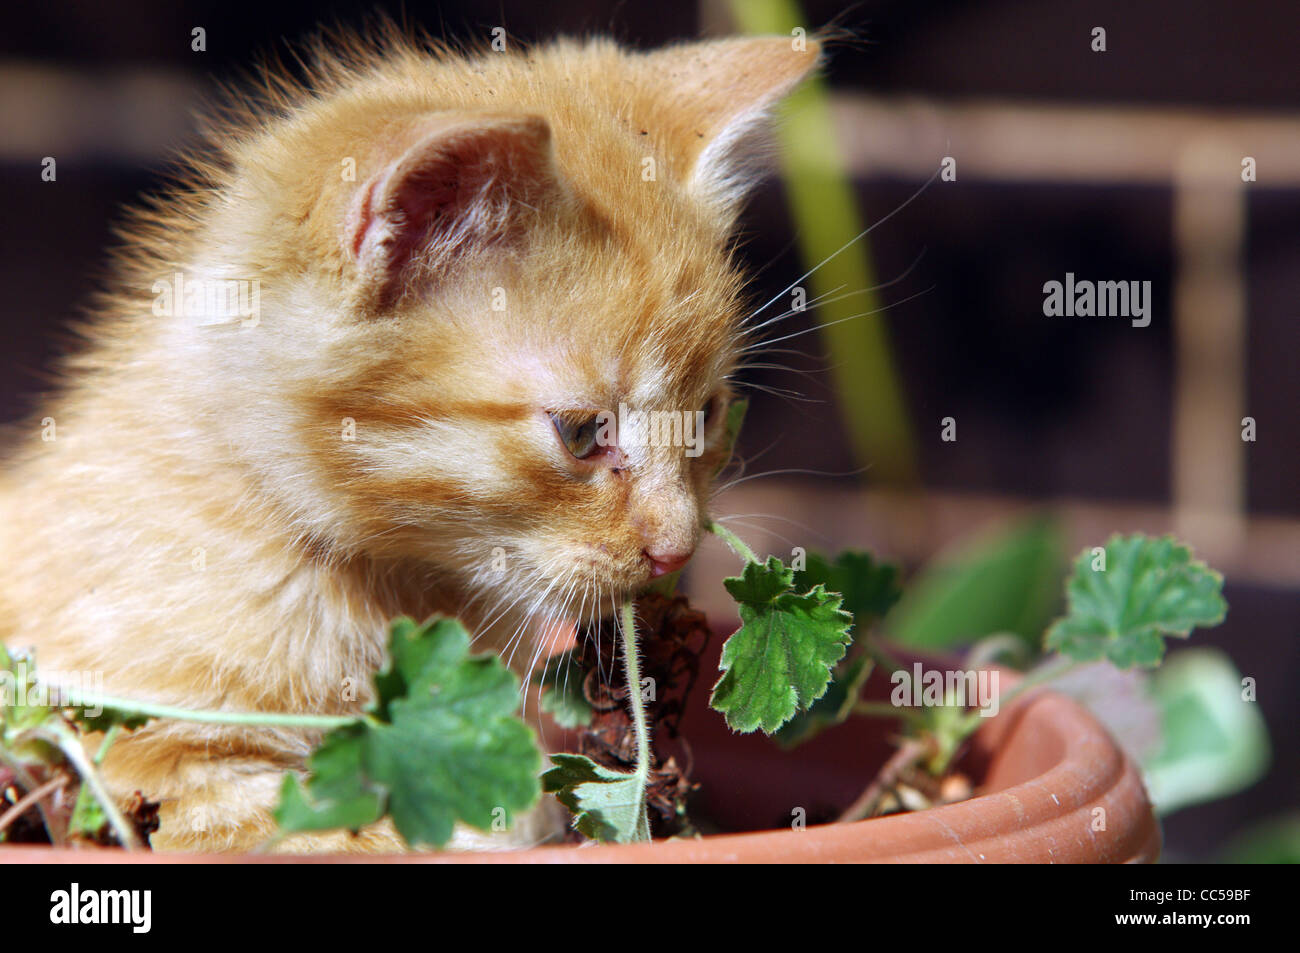 Cute kitten in a flowerpot Stock Photo